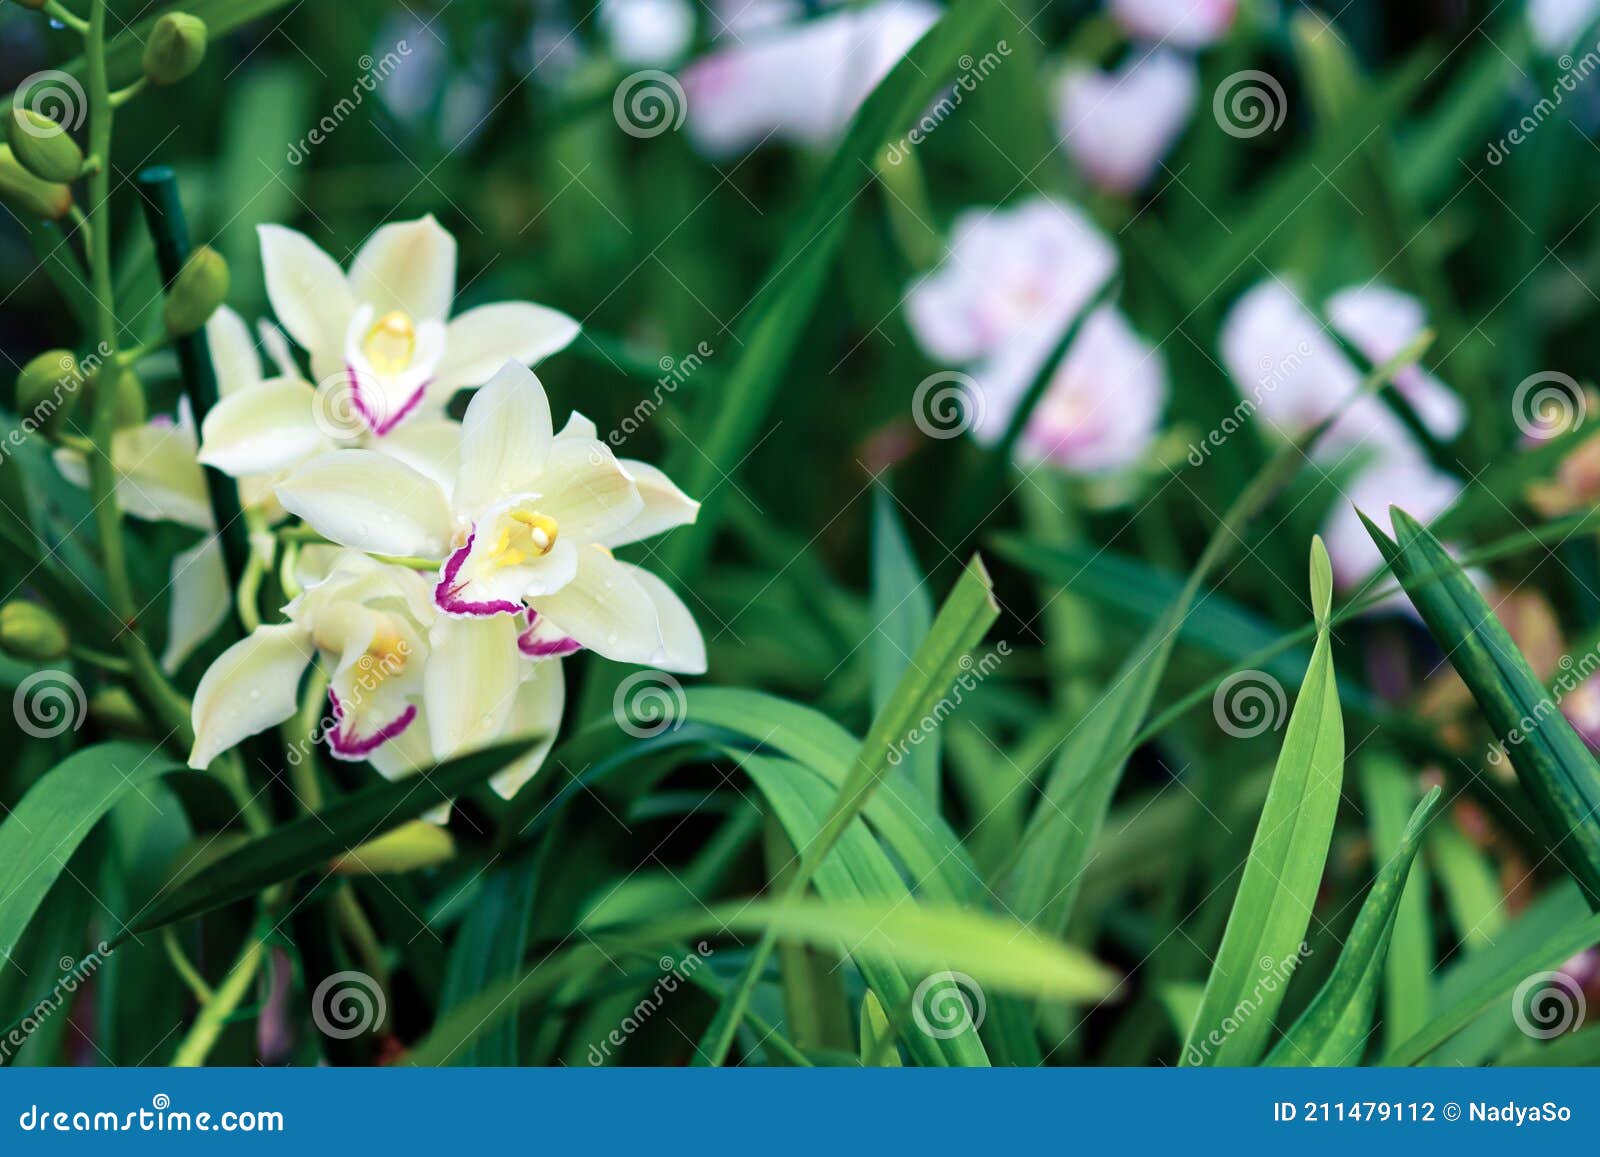 Jardín De Orquídeas Con La Floración Cymbidium Y Otras Orquídeas Terrestres  Foto de archivo - Imagen de amarillo, oriental: 211479112